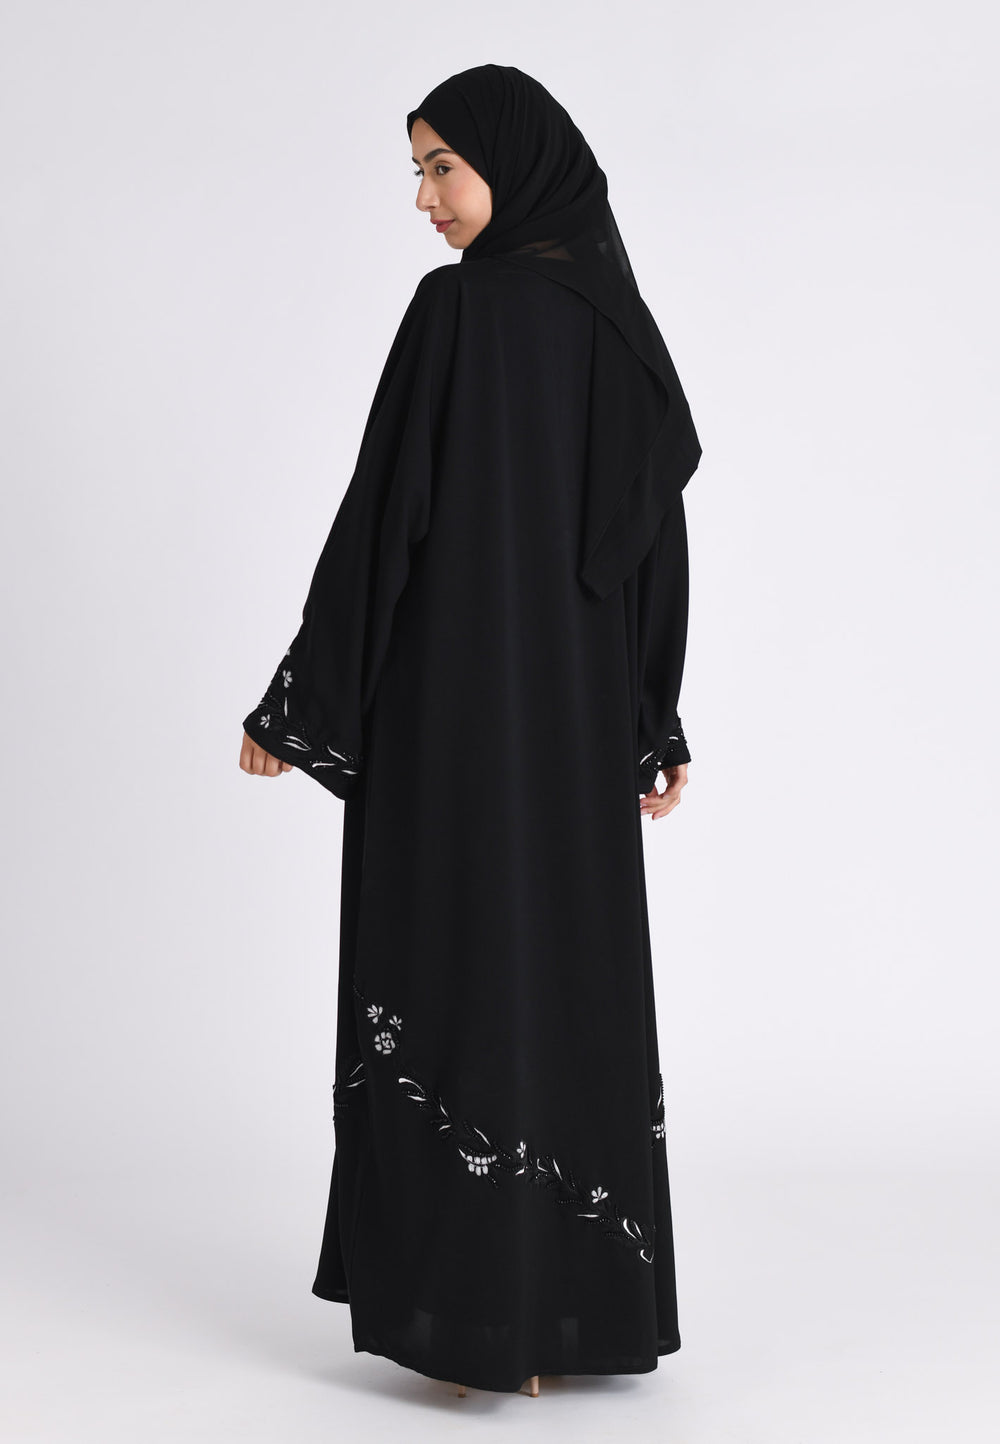 UK Abayas Online, Islamic Muslim Clothing